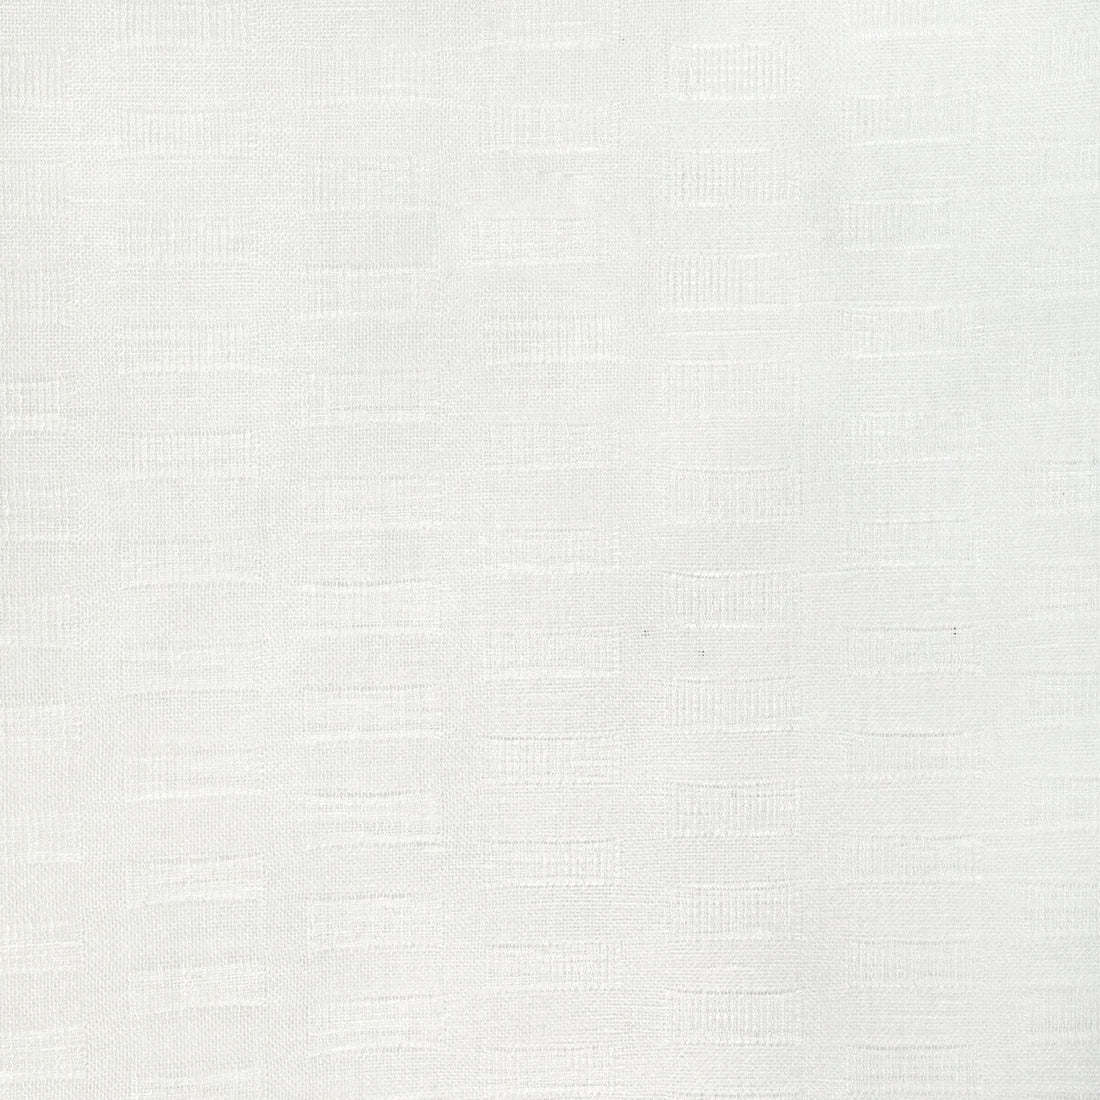 Kravet Basics fabric in 4941-1 color - pattern 4941.1.0 - by Kravet Basics